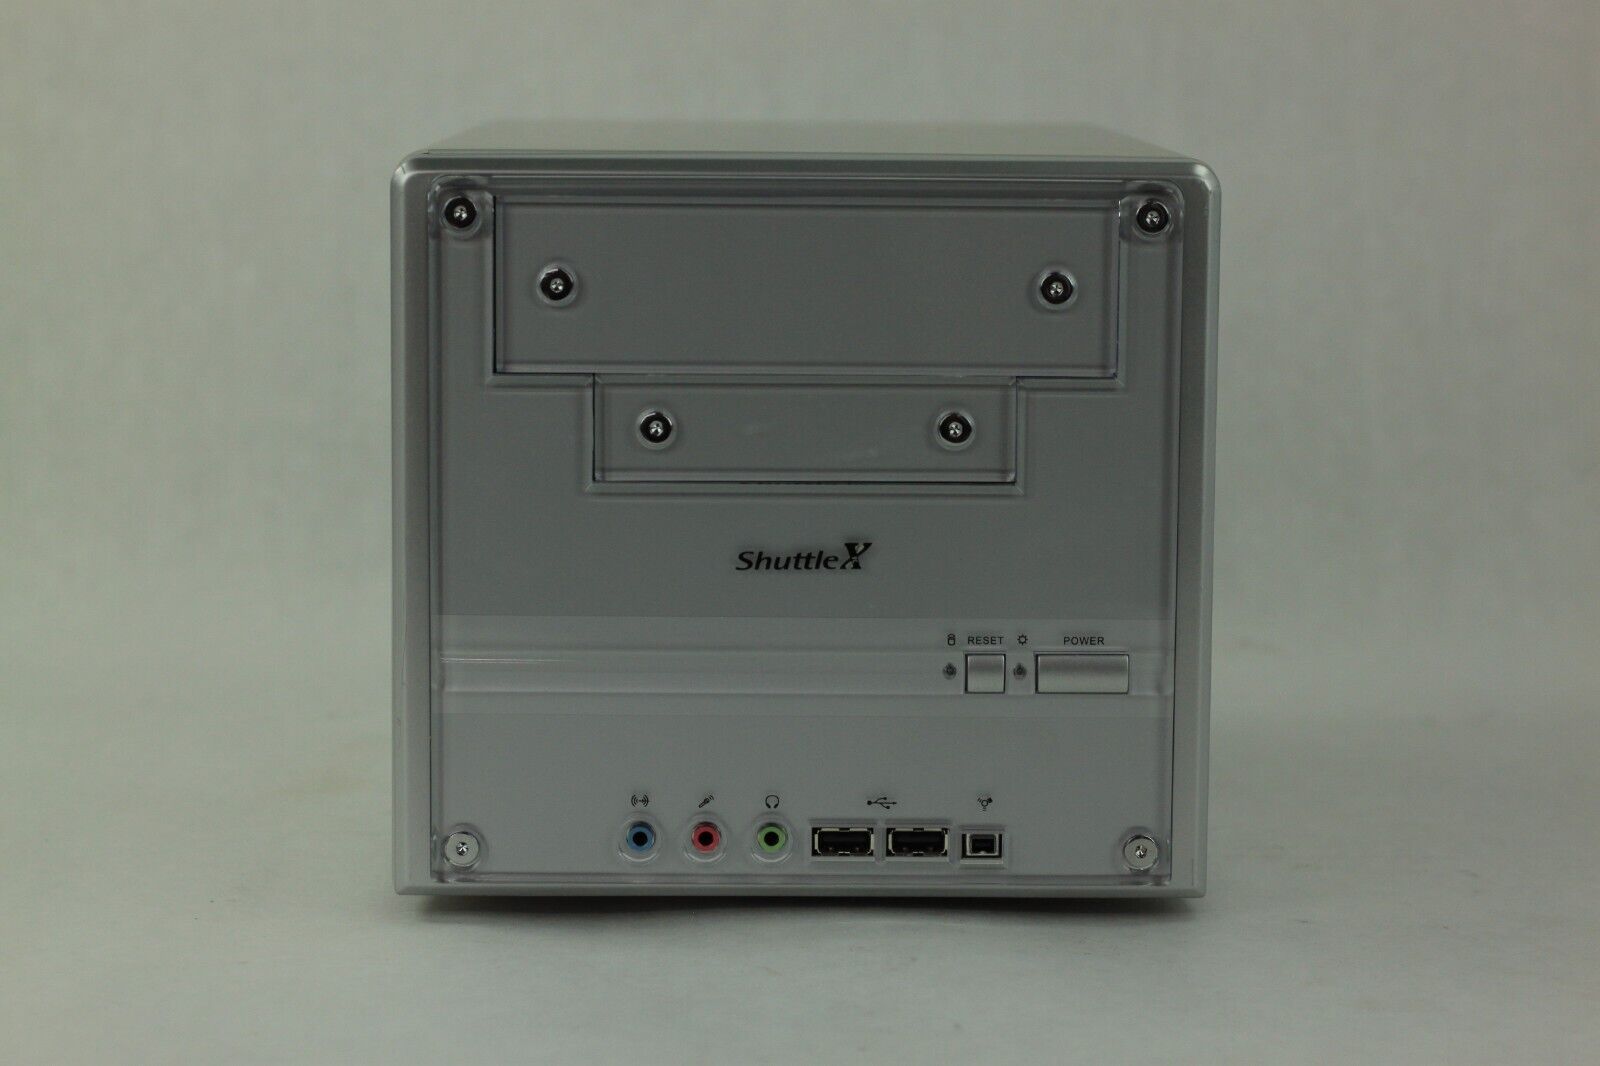 Shuttle SN45G SFF Platform AMD Athlon 2400+ 2GHz 512MB RAM No HDD/OS w/Box